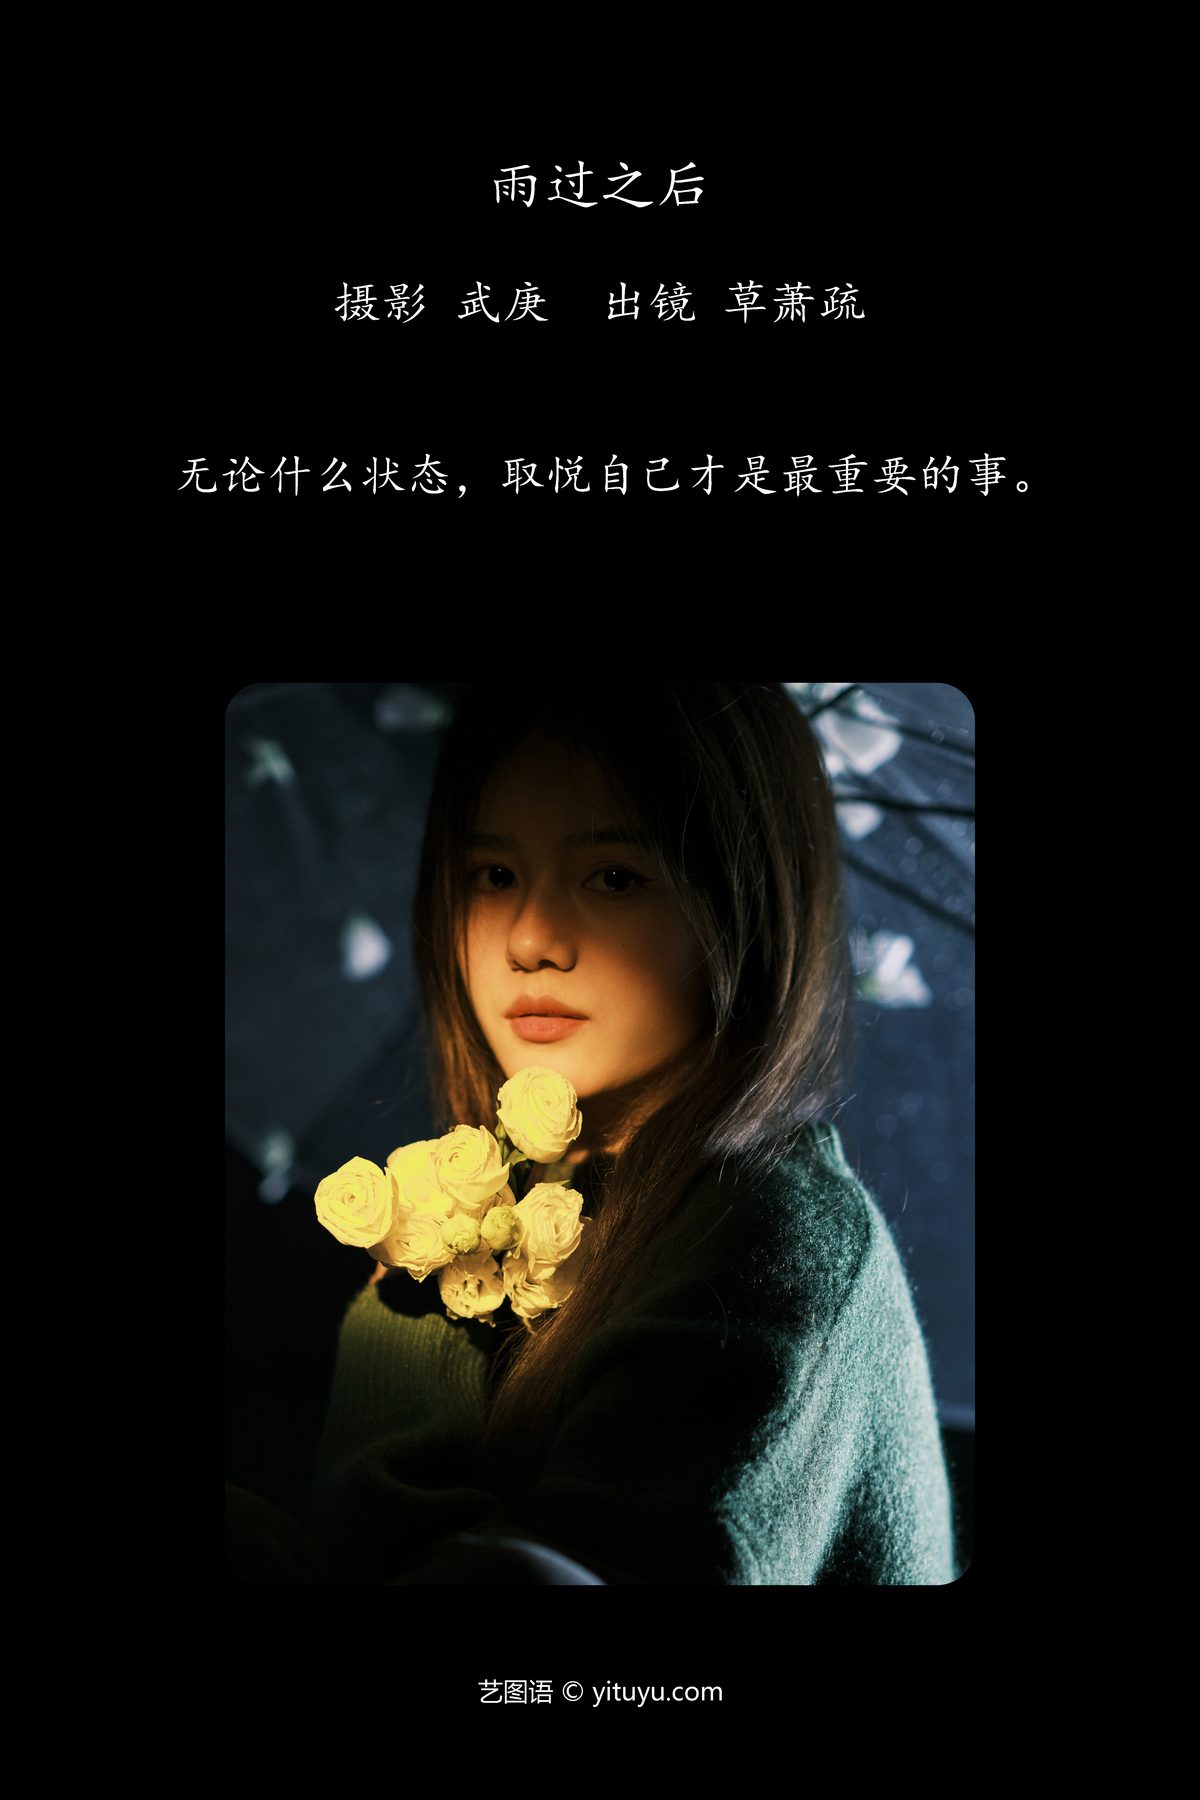 YiTuYu艺图语 Vol 5942 Cao Xiao Shu 0002 8777209117.jpg